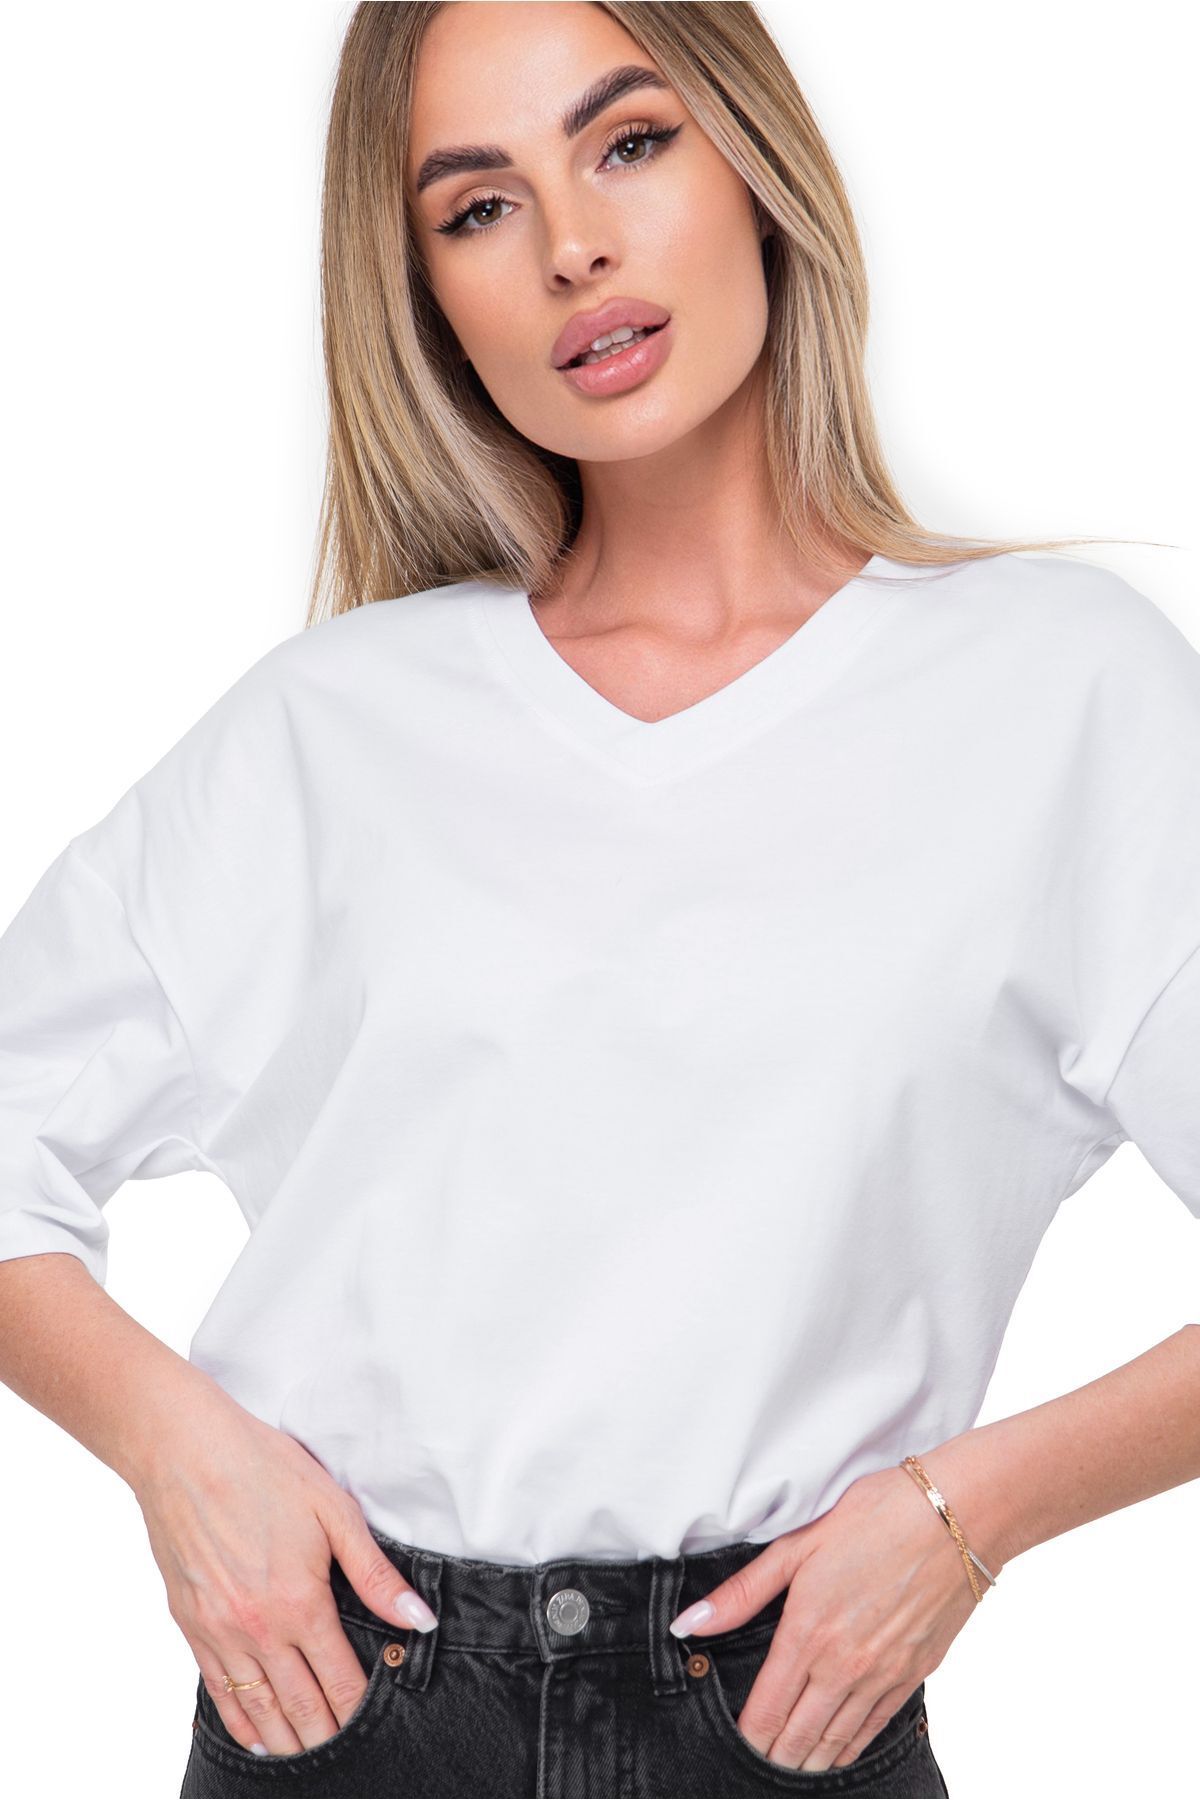 Happyfox Pamuklu Likralı Kadın V Yaka Baskısız Oversize Düz T-shirt Basic Beyaz